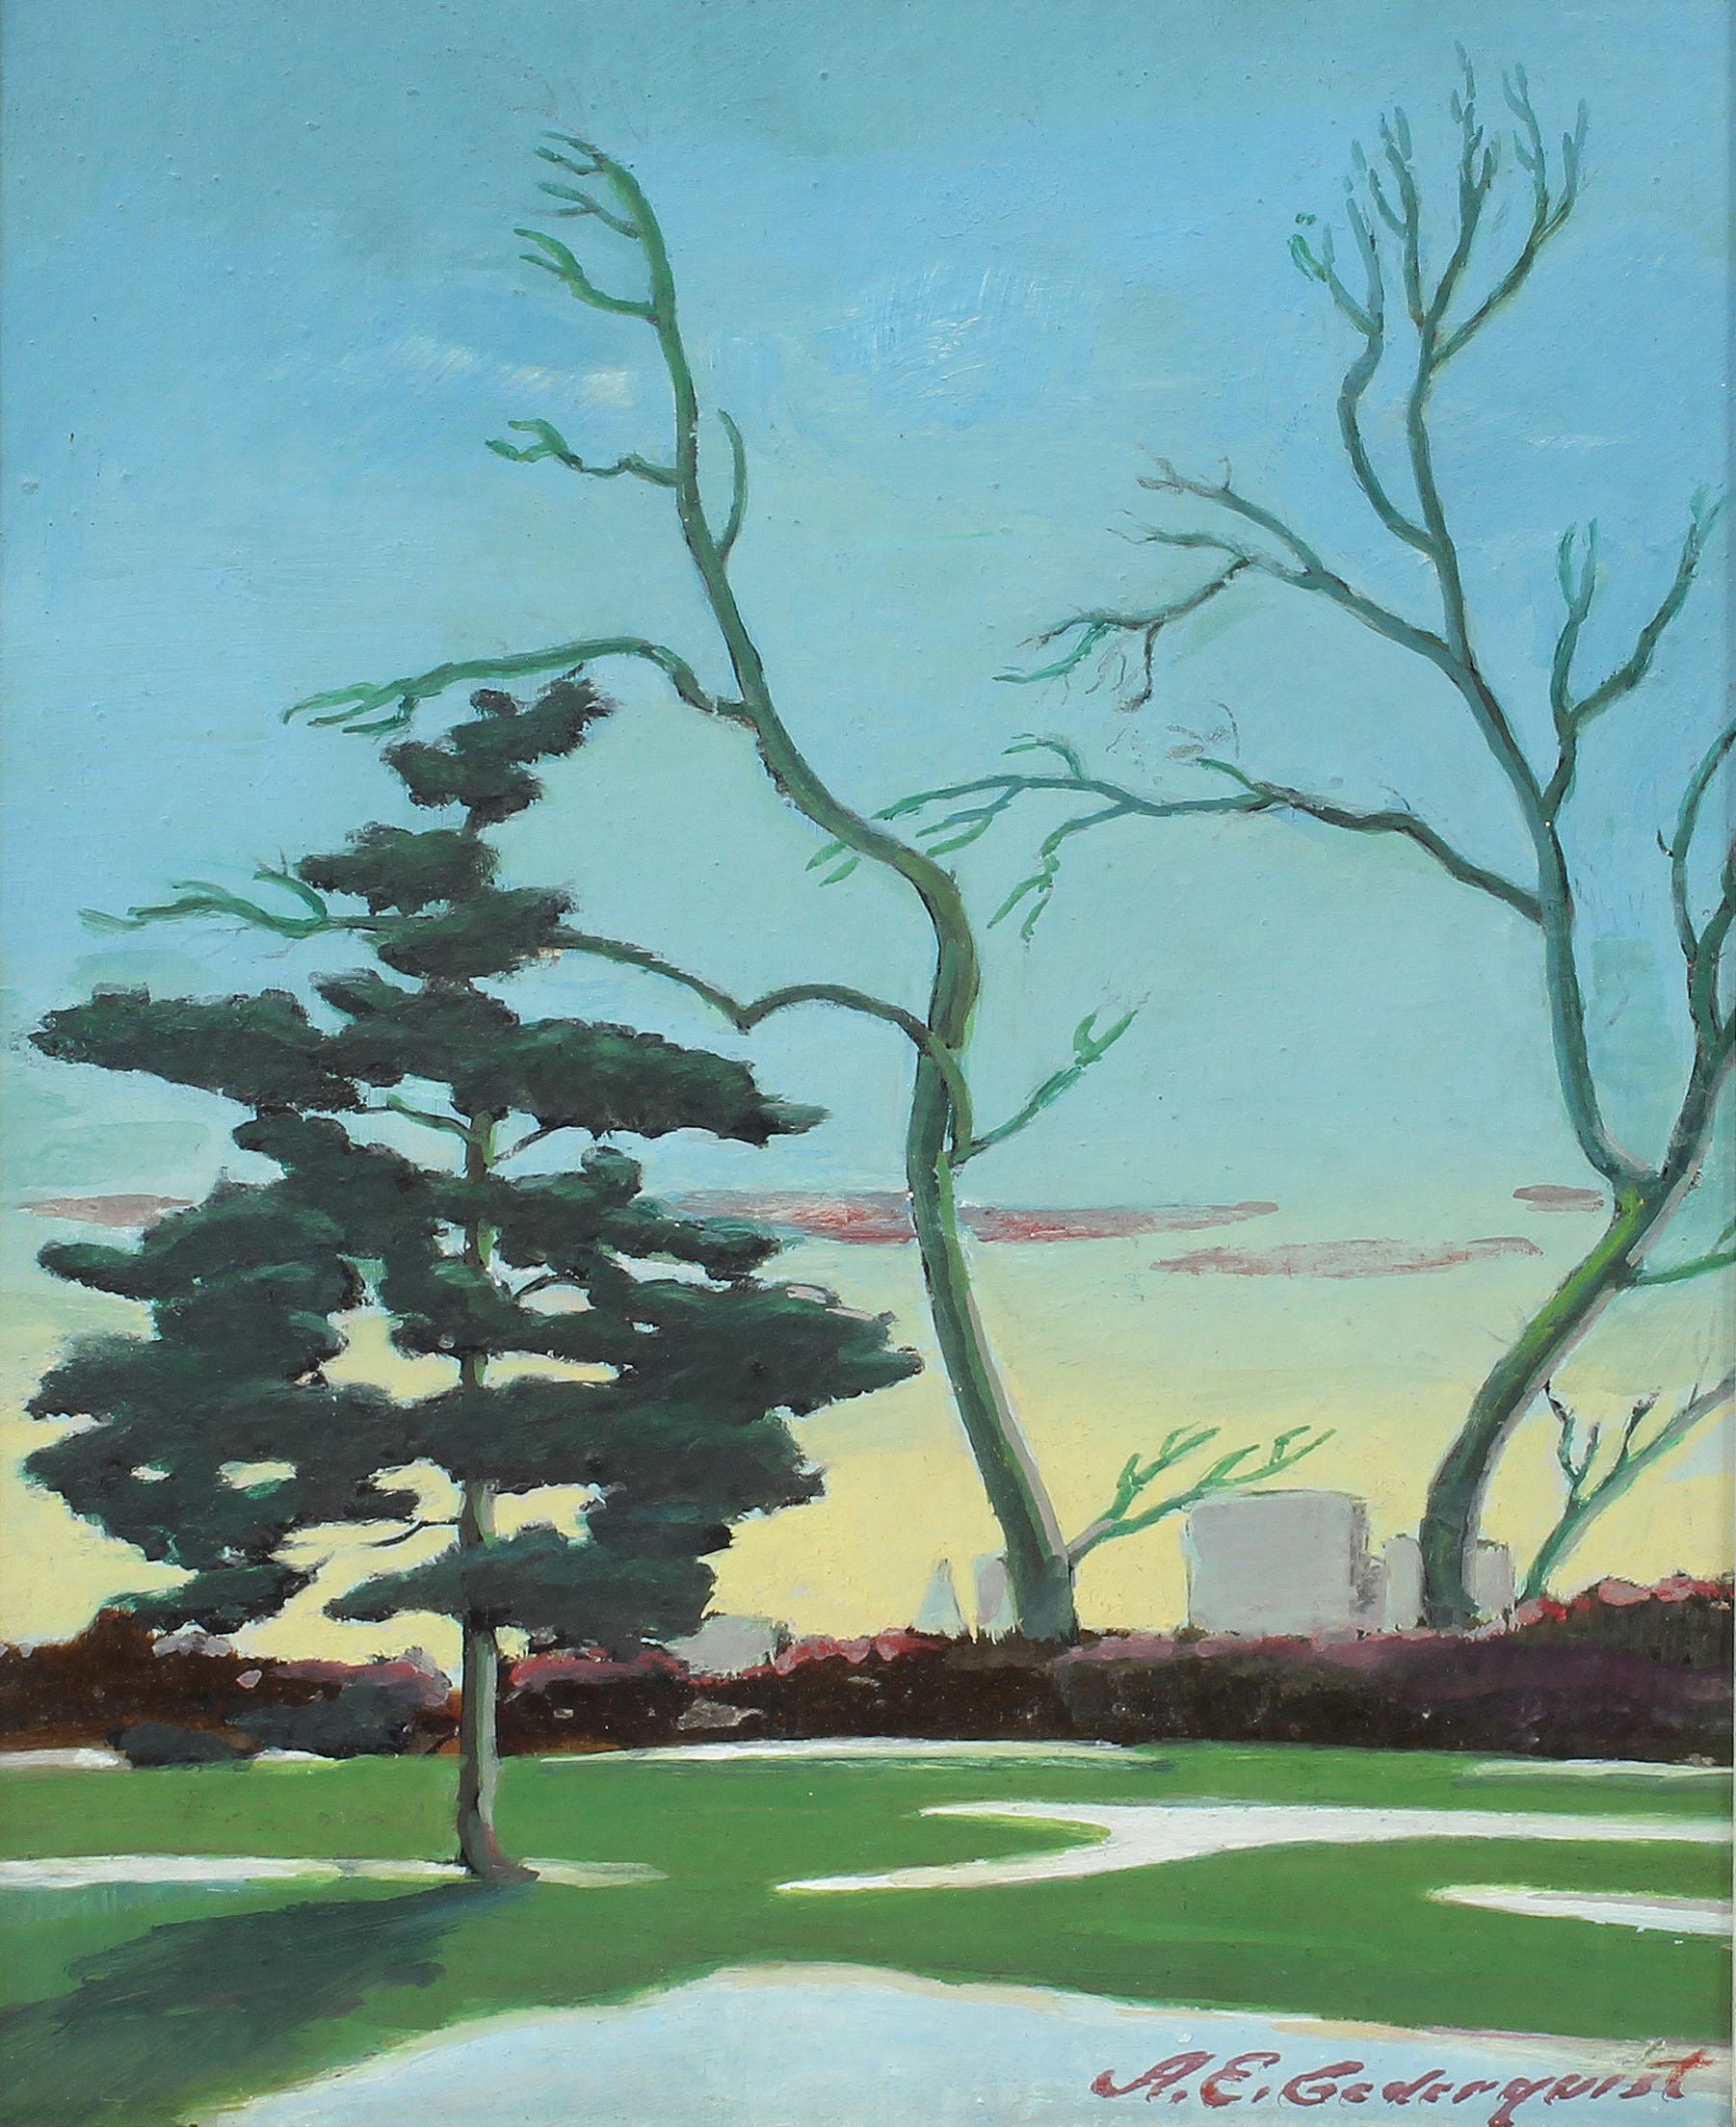 Antique ancien étudiant réaliste américain Central Park New York Sunset Hopper  Peinture - peinture - Impressionnisme Painting par Arthur E. Cedarquist